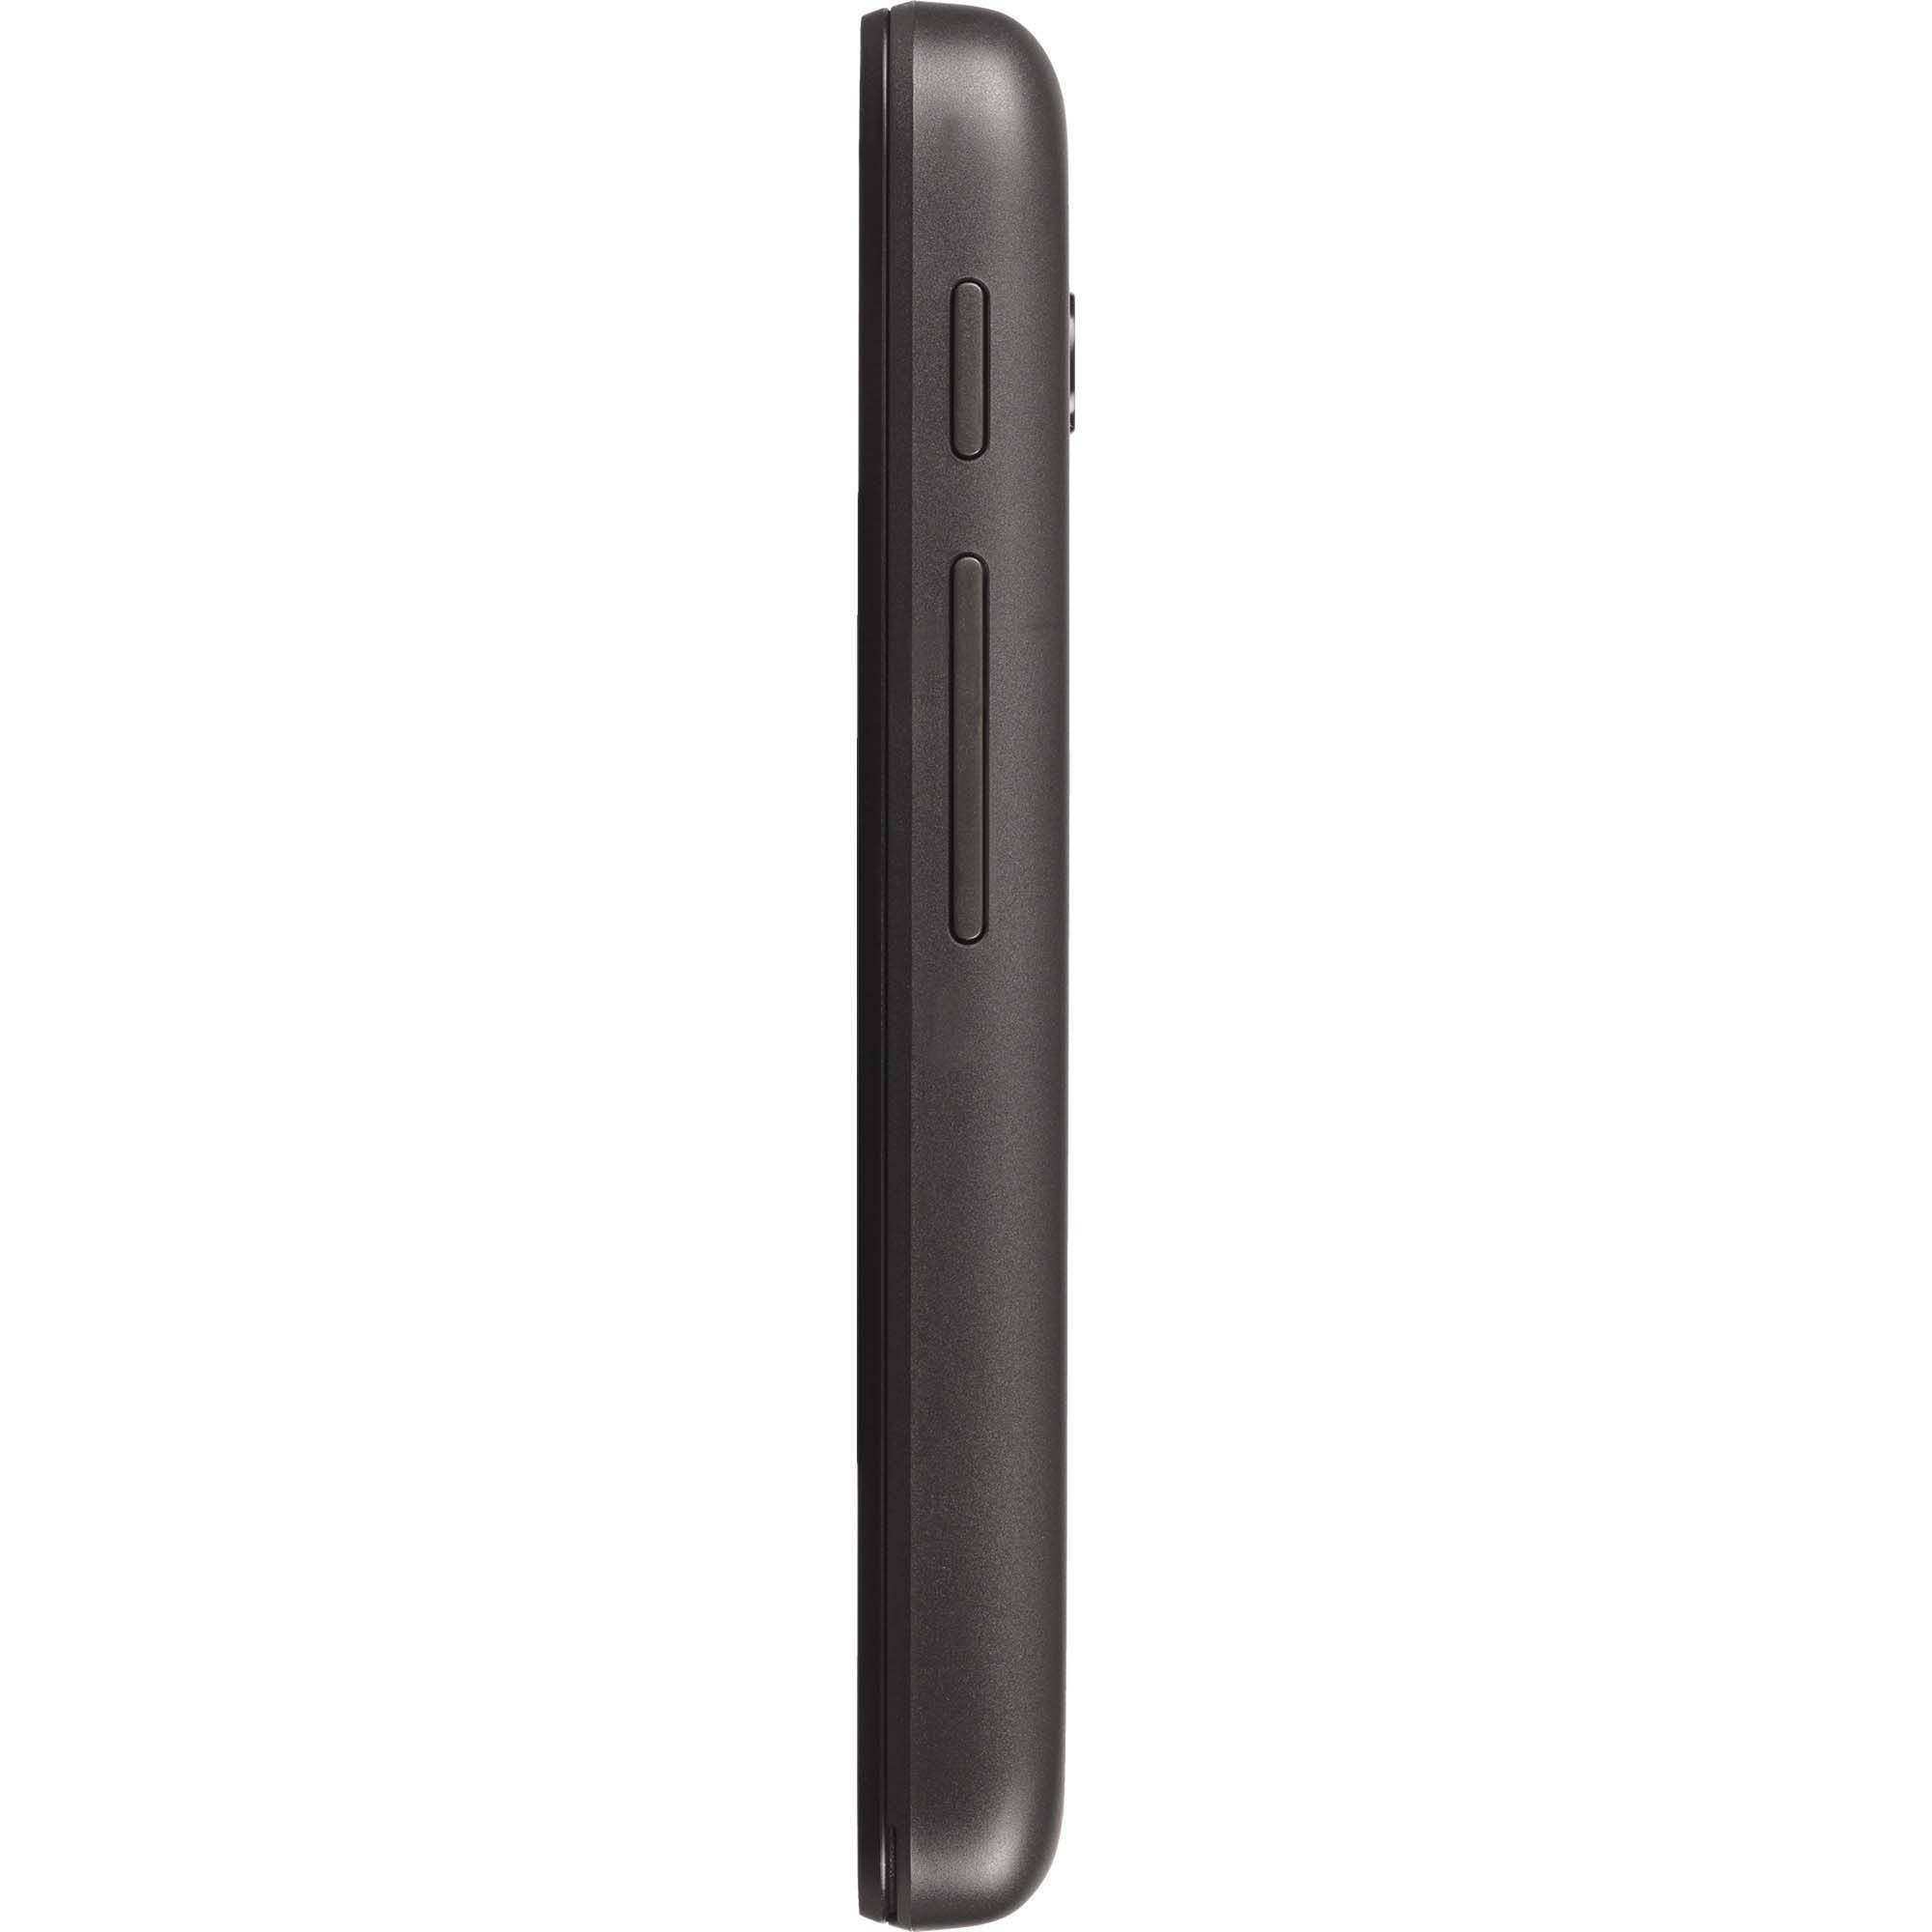 TracFone Alcatel Pixi Glitz Prepaid Smartphone, Black - image 2 of 6